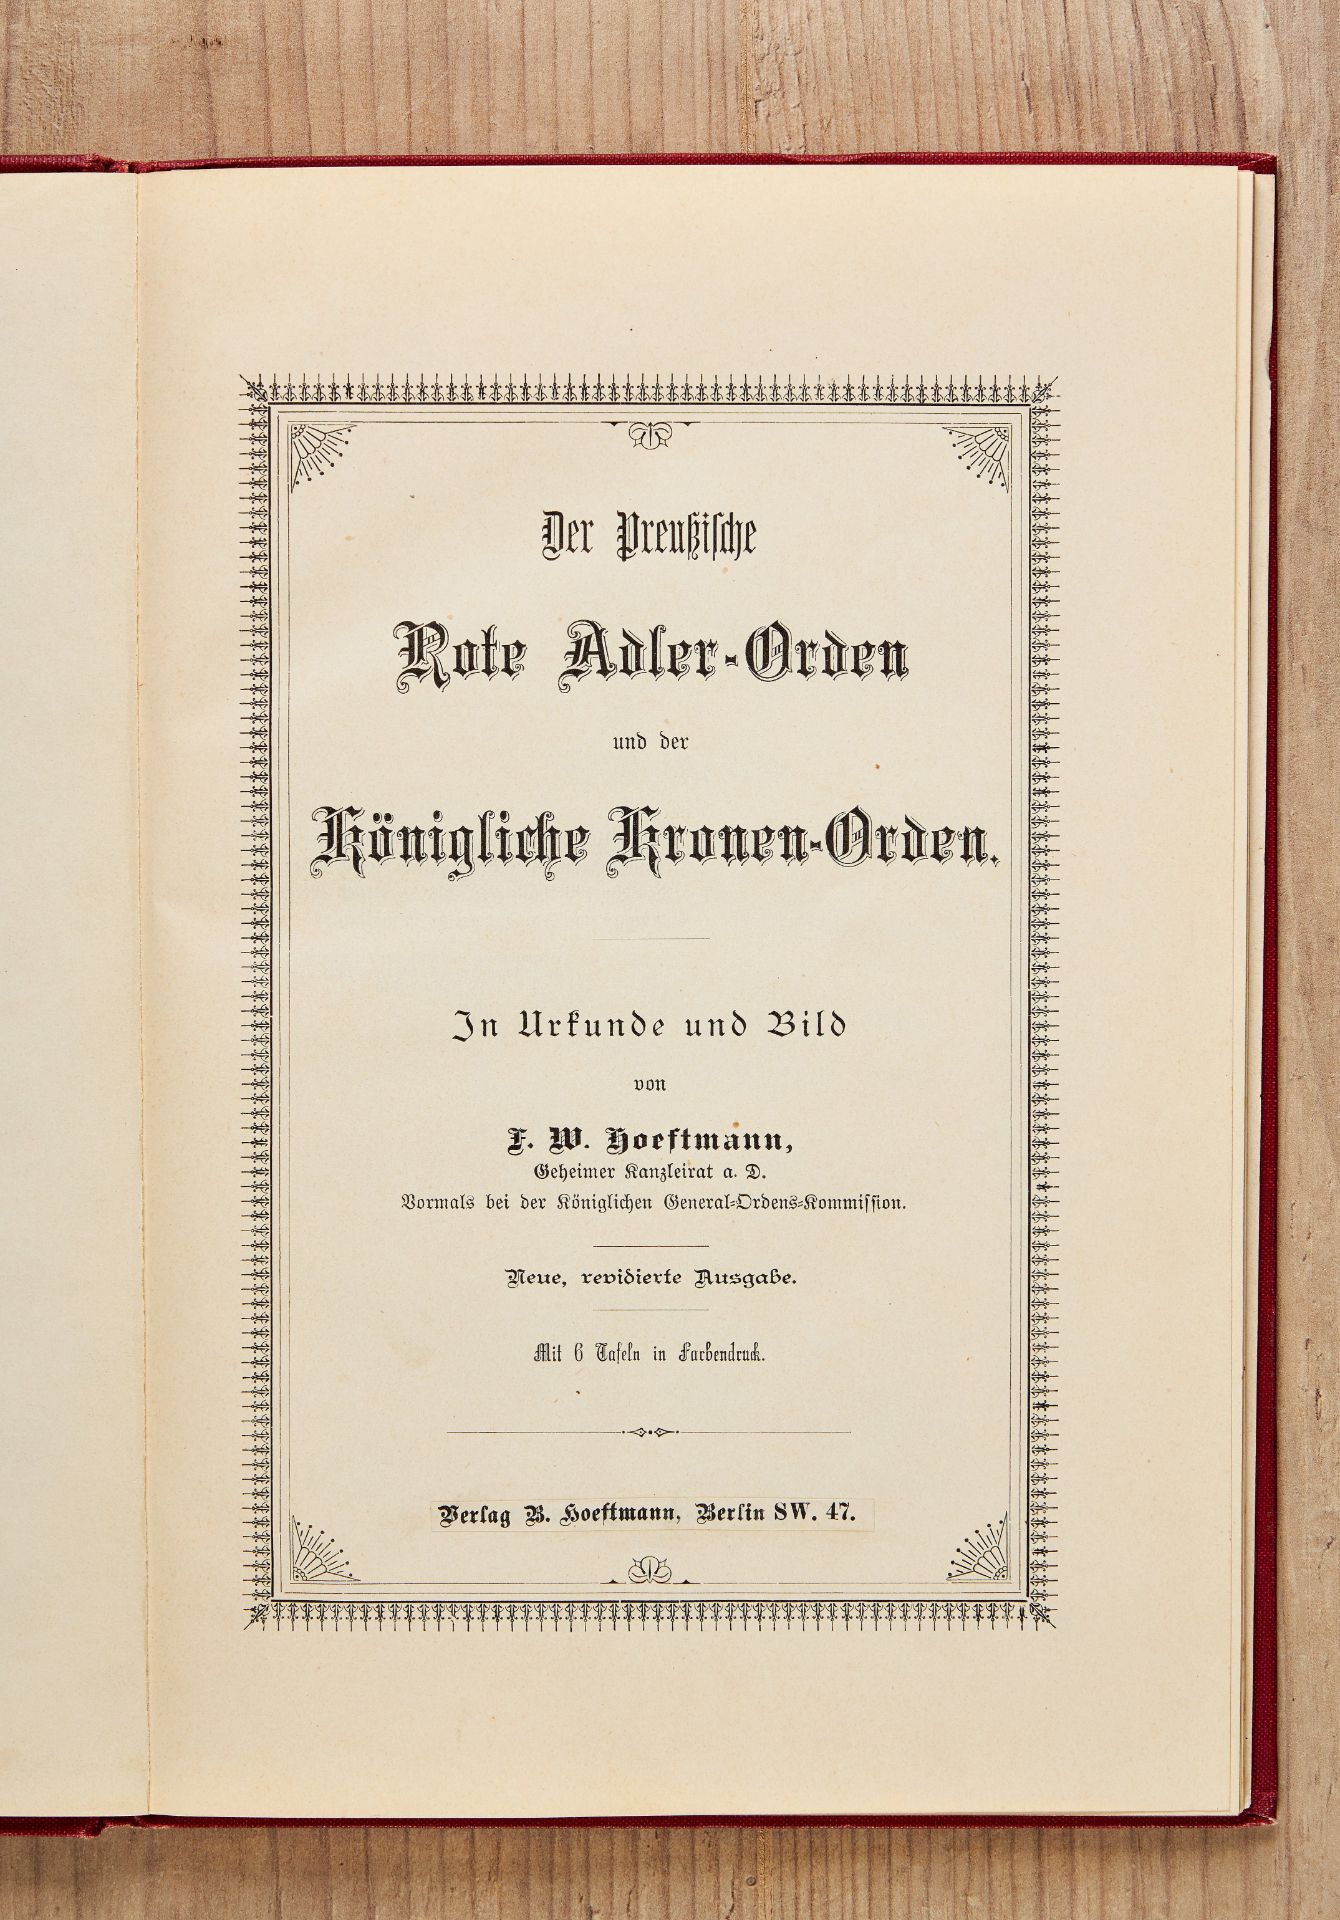 Preußen : F. W. Hoeftmann, Der preußische Rote Adler-Orden und der Königliche Kronen-Orden - Image 5 of 6